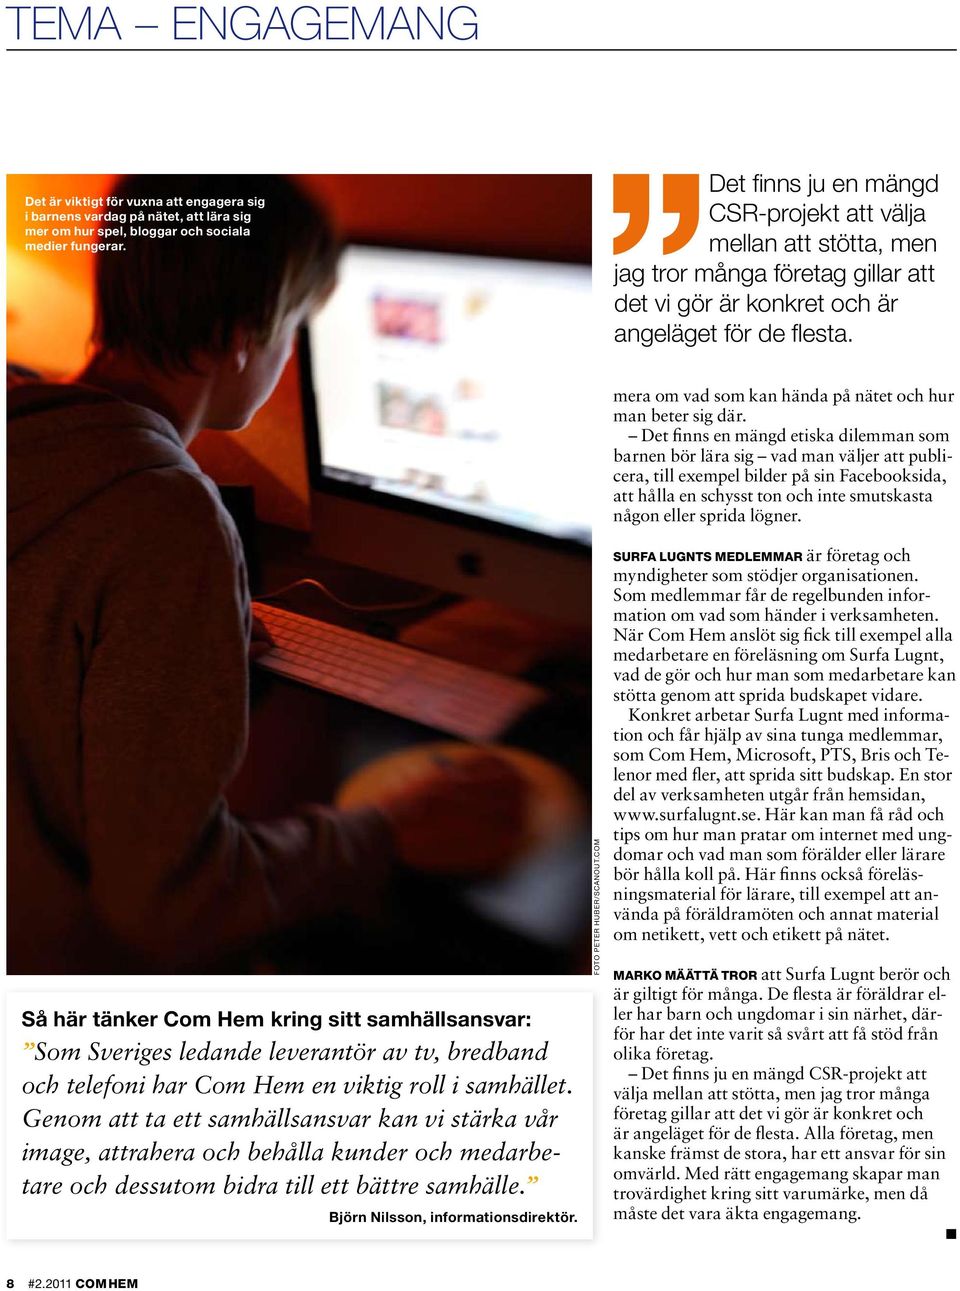 Så här tänker Com Hem kring sitt samhällsansvar: Som Sveriges ledande leverantör av tv, bredband och telefoni har Com Hem en viktig roll i samhället.